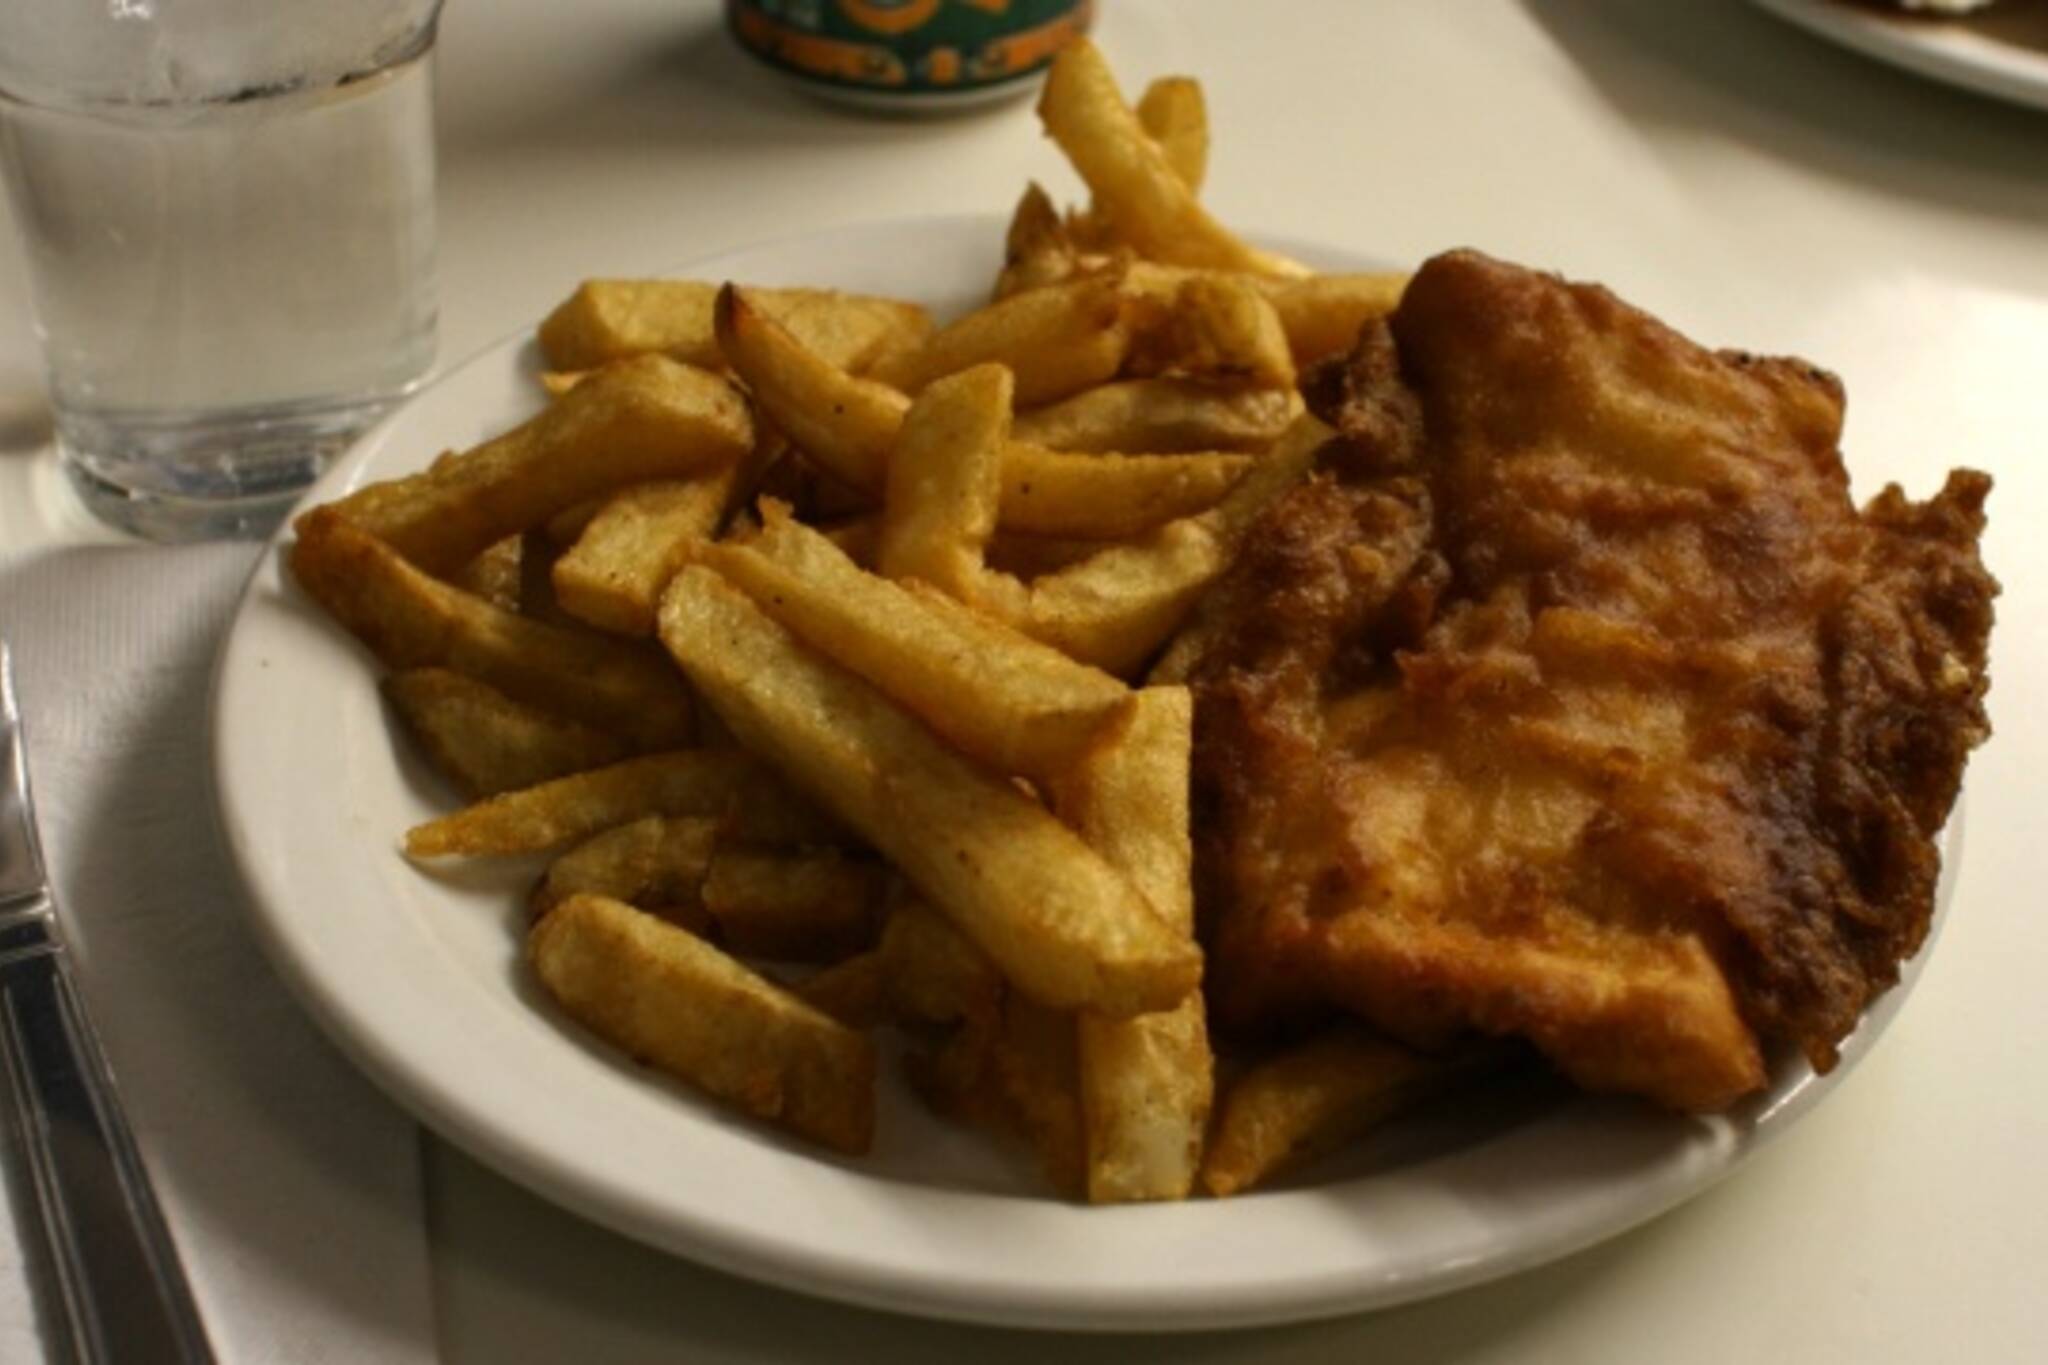 Fish & chips at Penrose